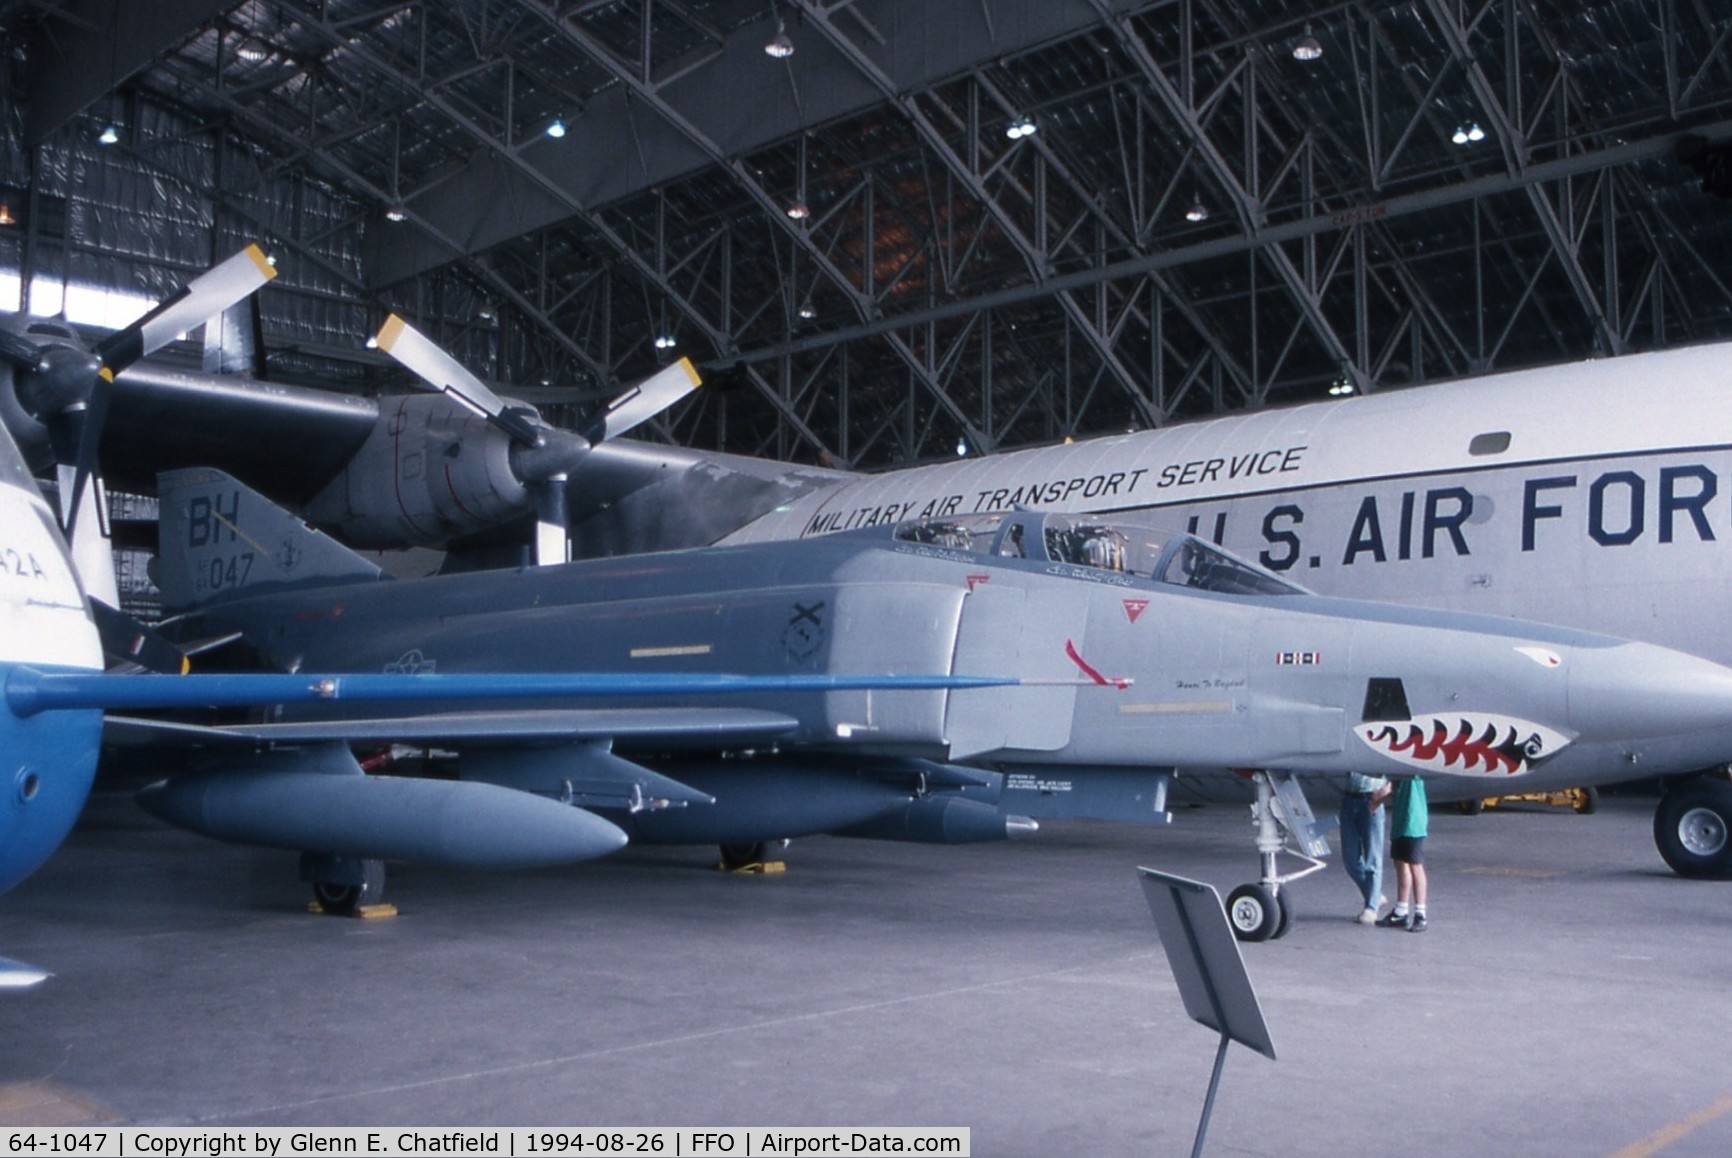 64-1047, 1964 McDonnell RF-4C-22-MC Phantom II C/N 947, RF-4C at the National Museum of the U.S. Air Force.  Flew 172 sorties in Desert Storm/Desert Shield